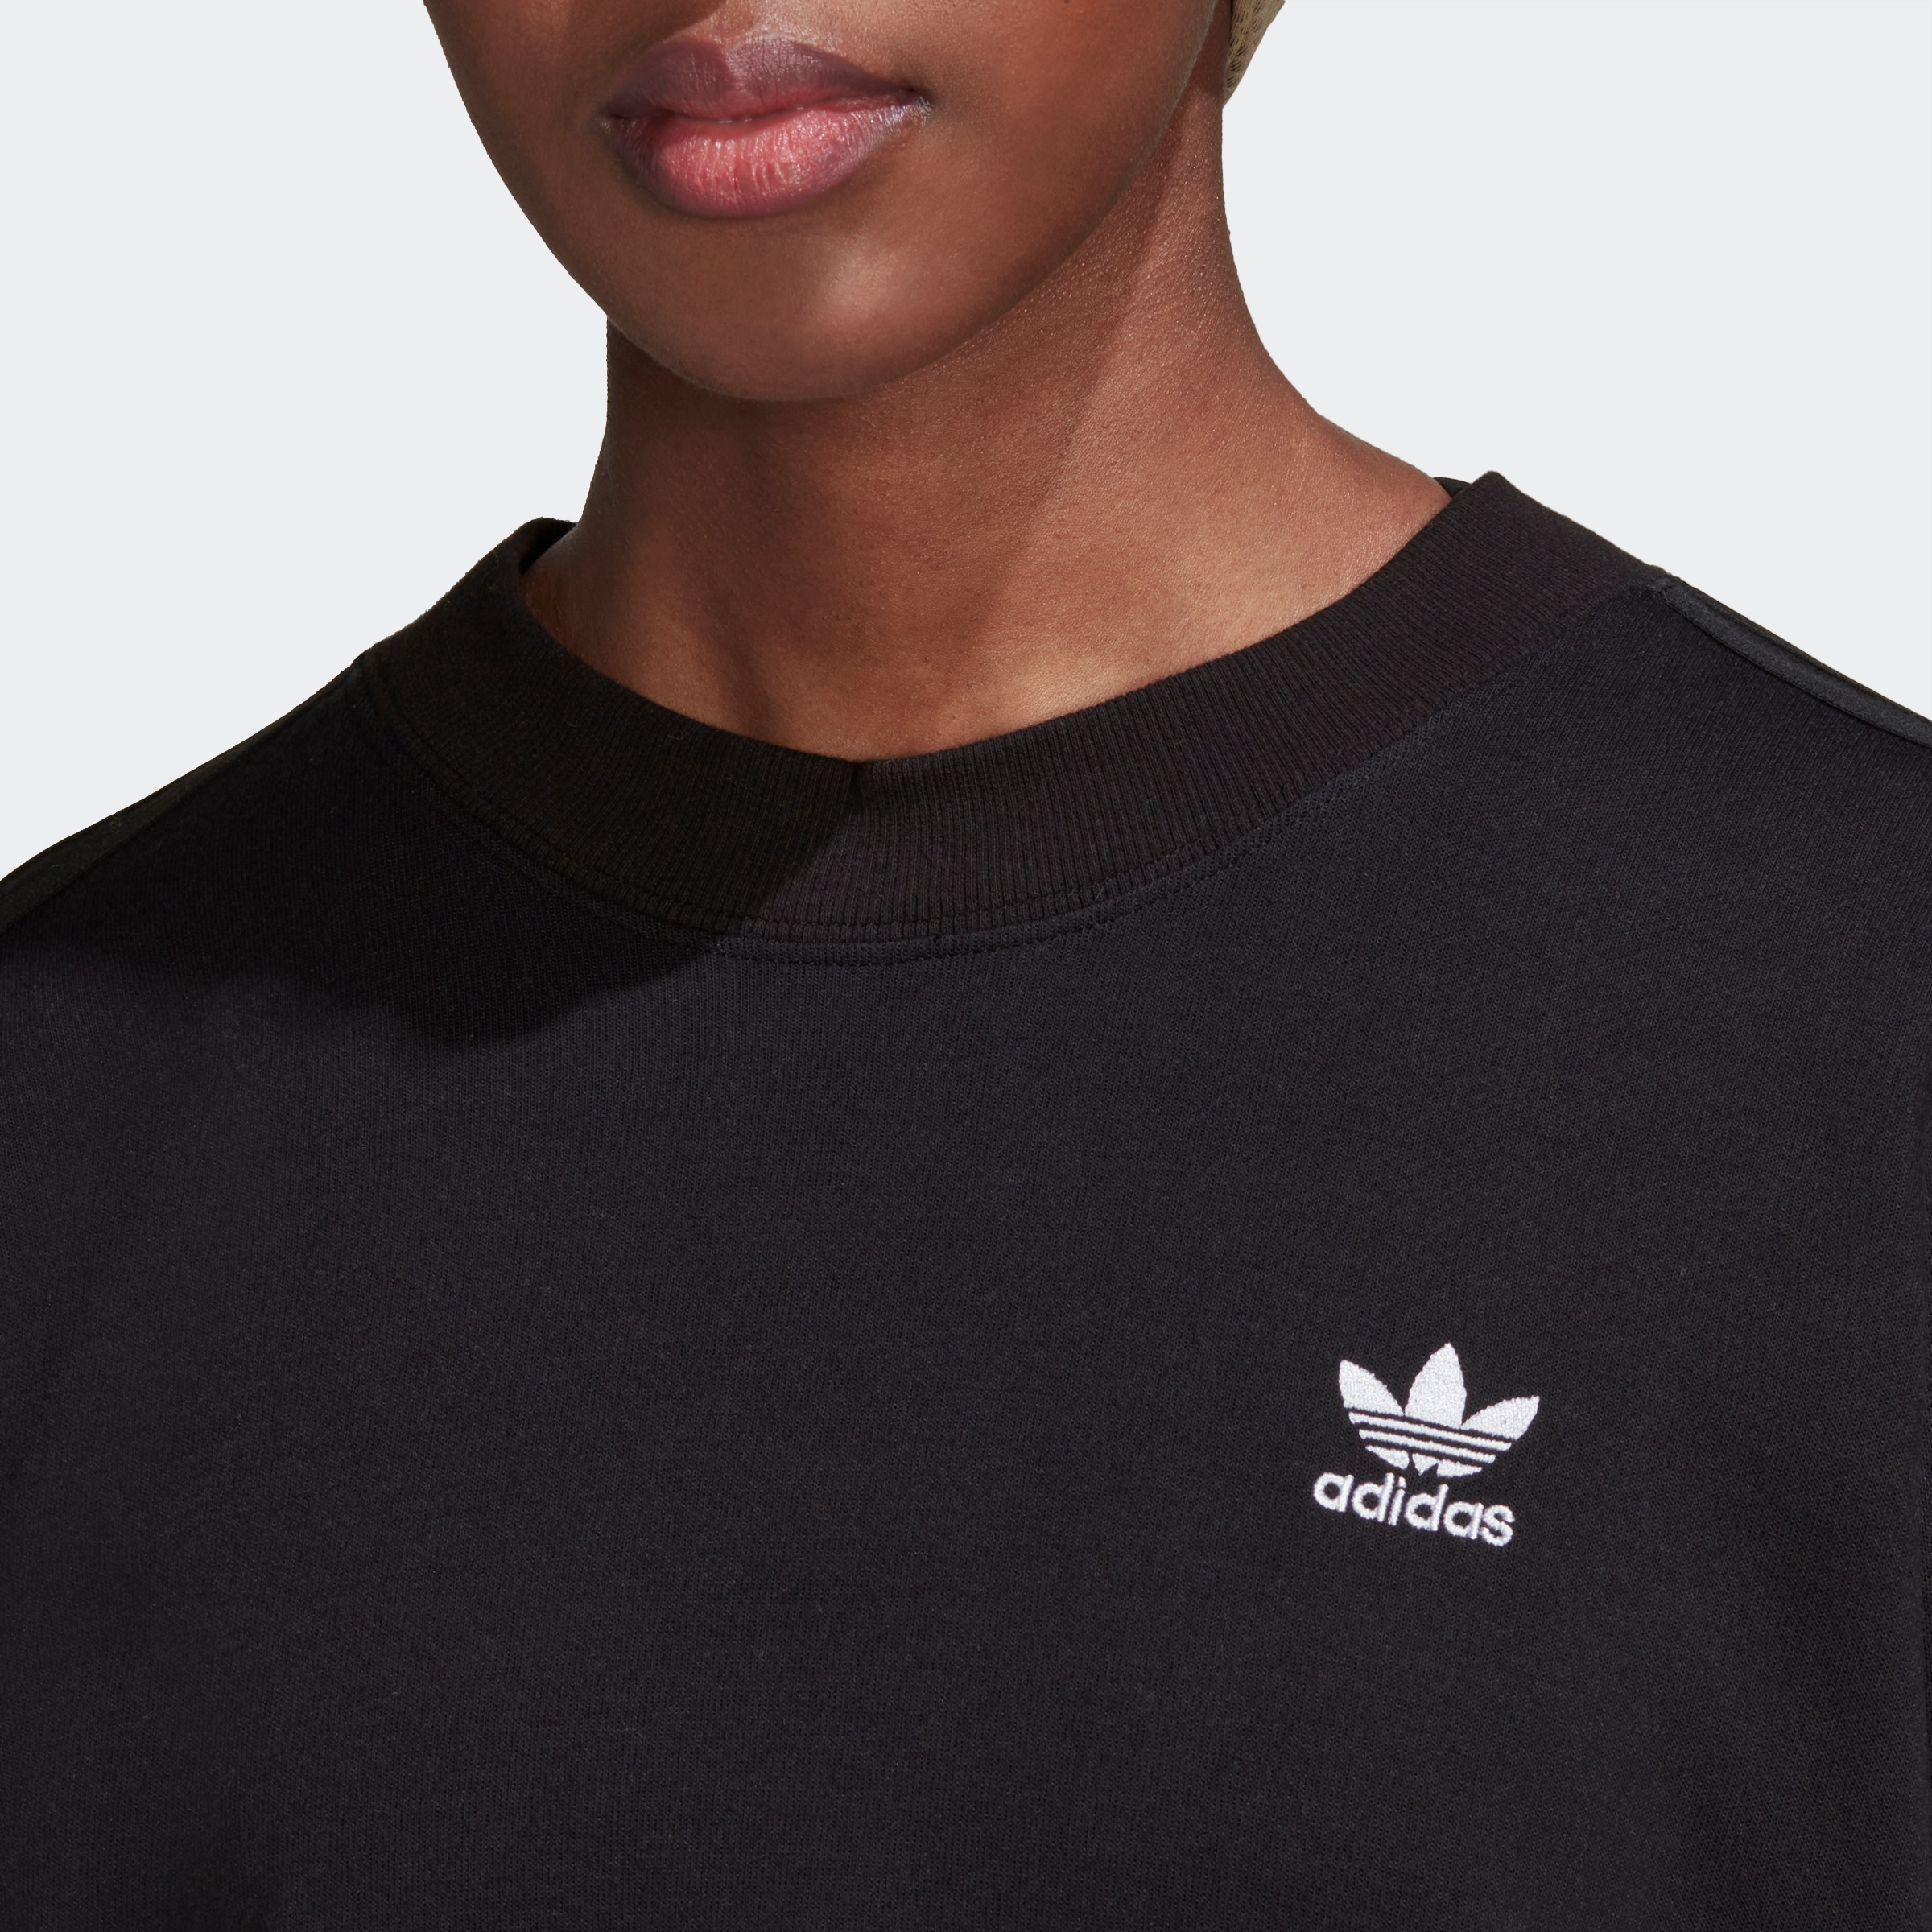 LACED« Originals »ALWAYS ♕ ORIGINAL kaufen versandkostenfrei adidas Sweatshirt